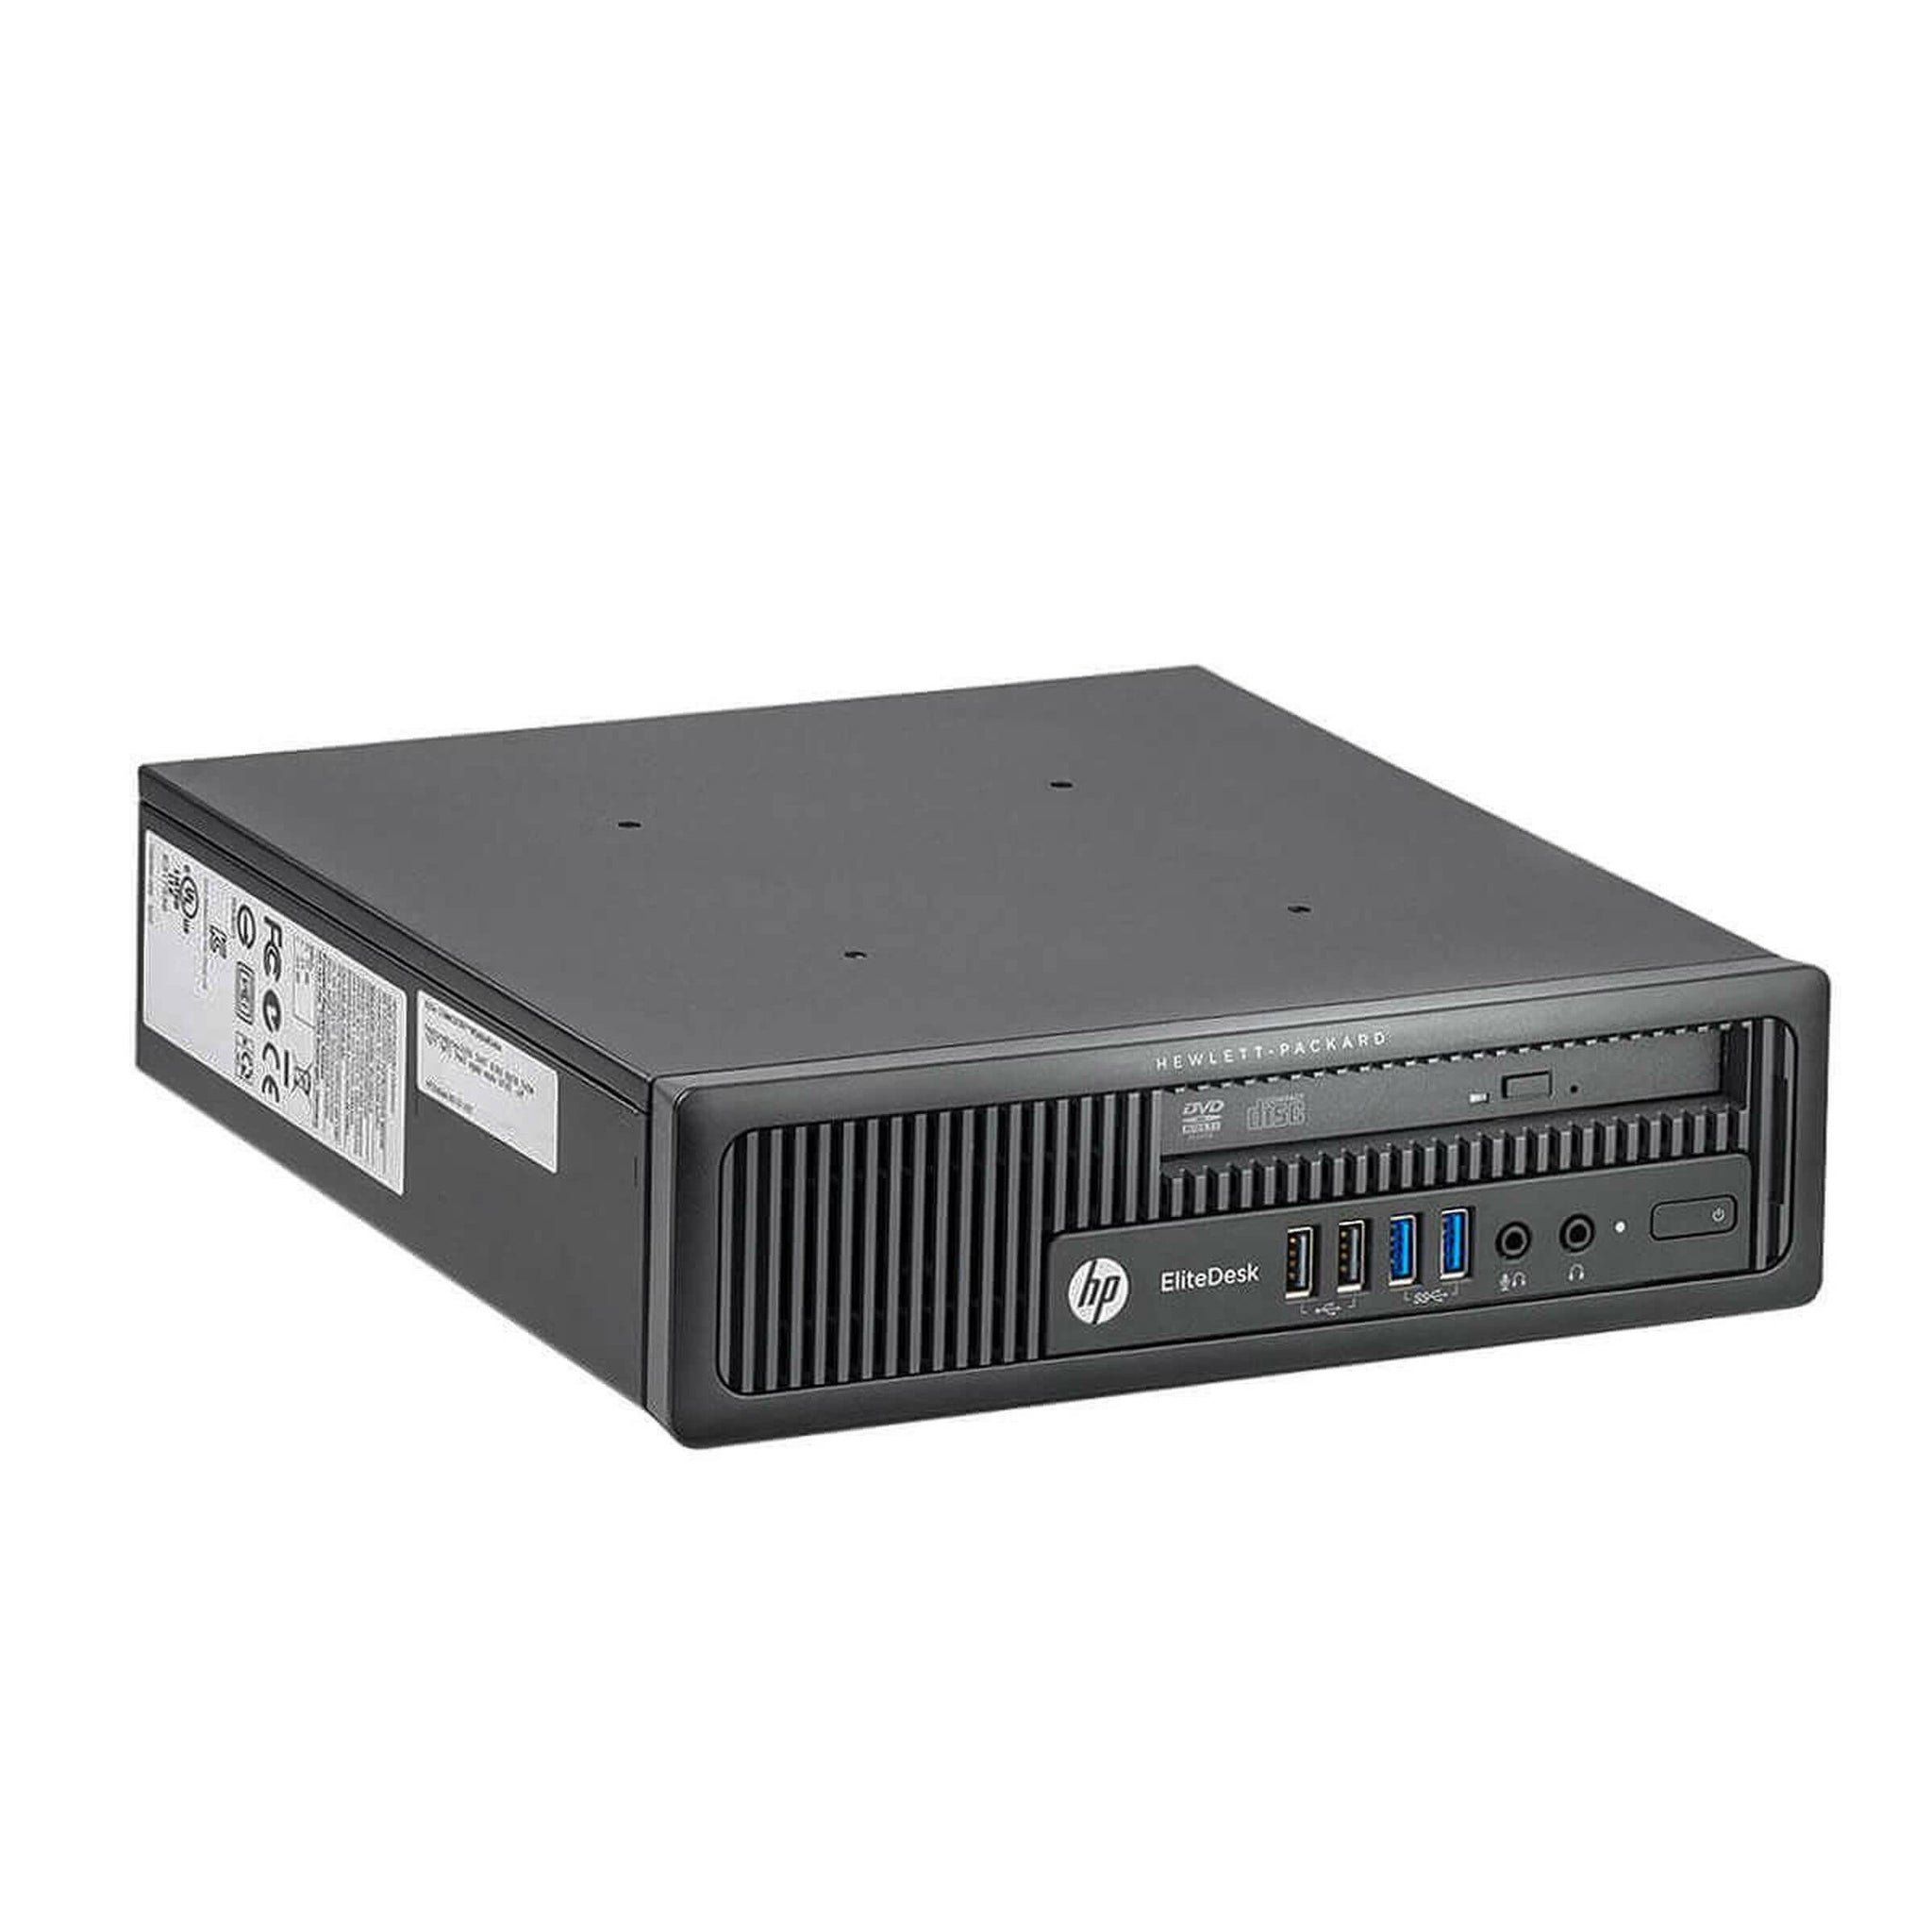 HP Elitedesk 800 G1 USDT 4th Gen Quad Core Desktop PC 8GB RAM SSD